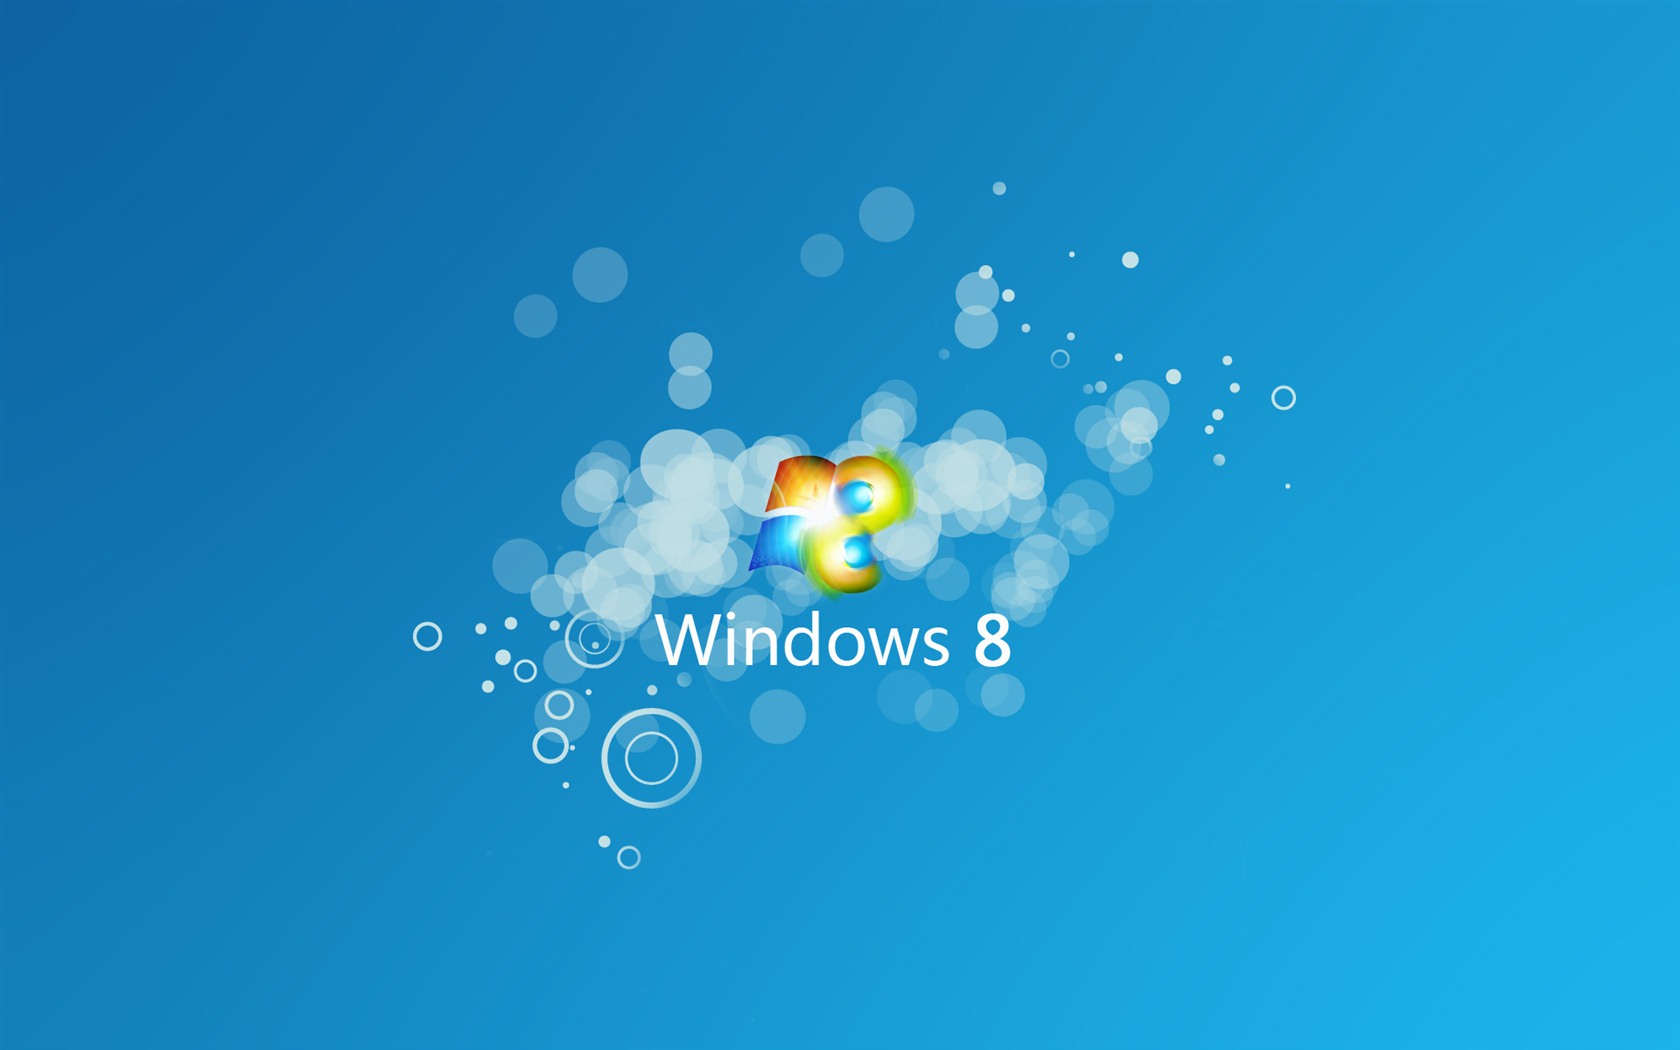 Windows 8 theme wallpaper (1) #9 - 1680x1050